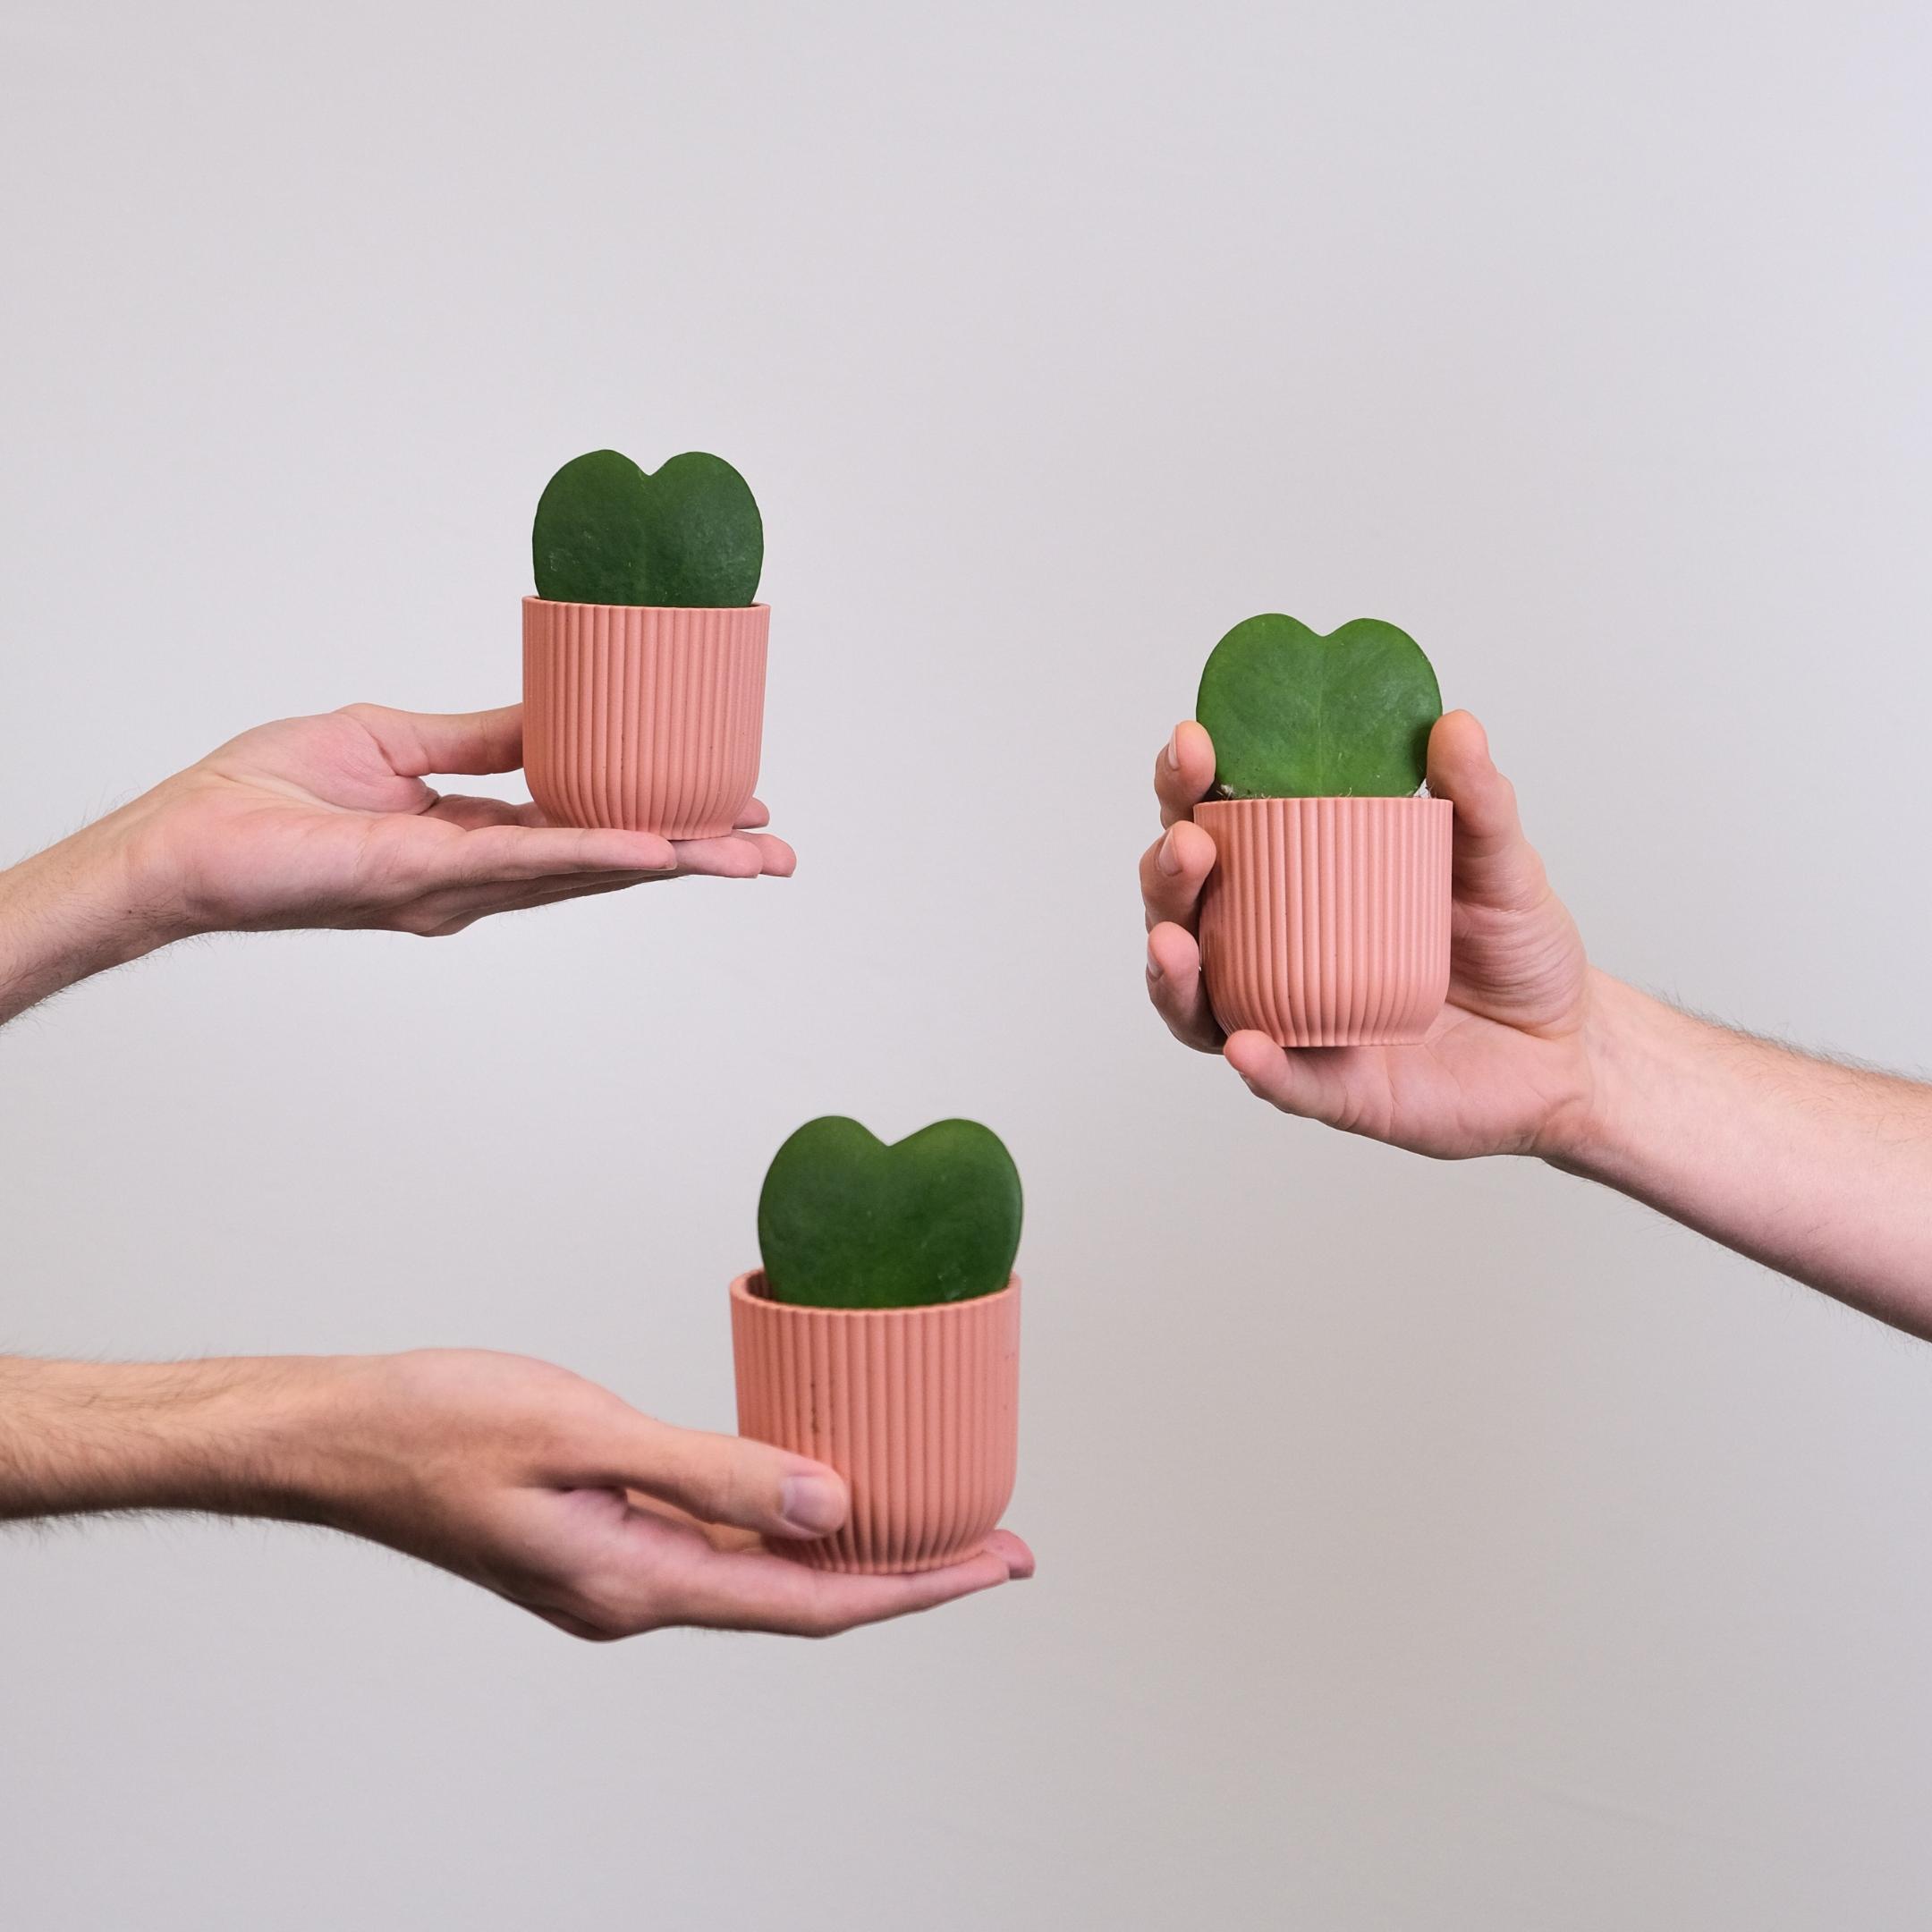 Drei Hände halten jeweils eine Tasse mit einem grünen Herz in das Bild